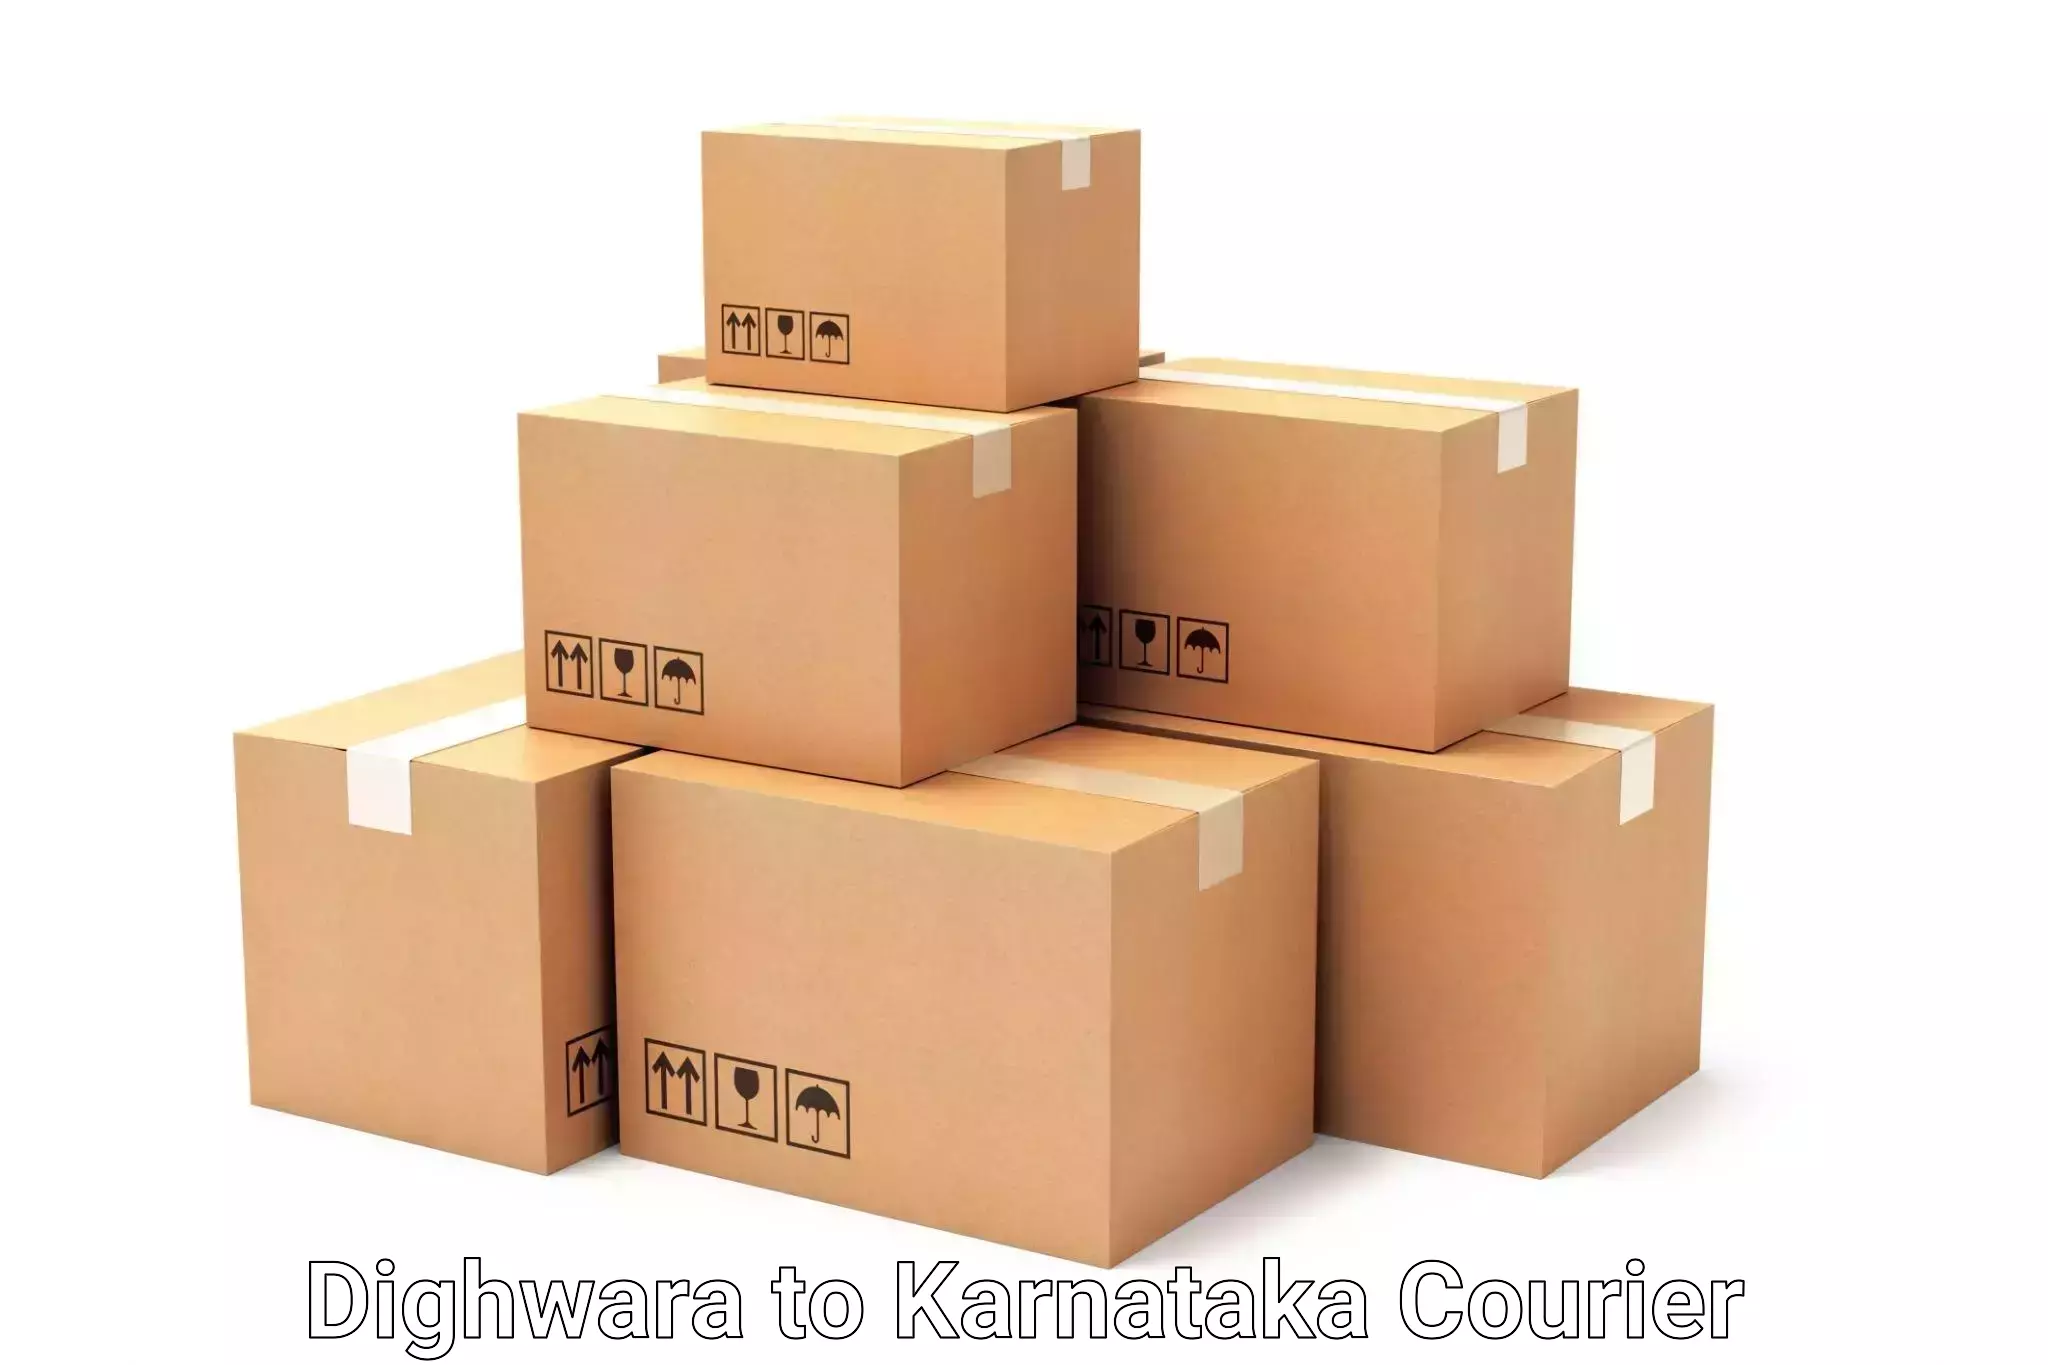 Personal effects shipping Dighwara to Karnataka